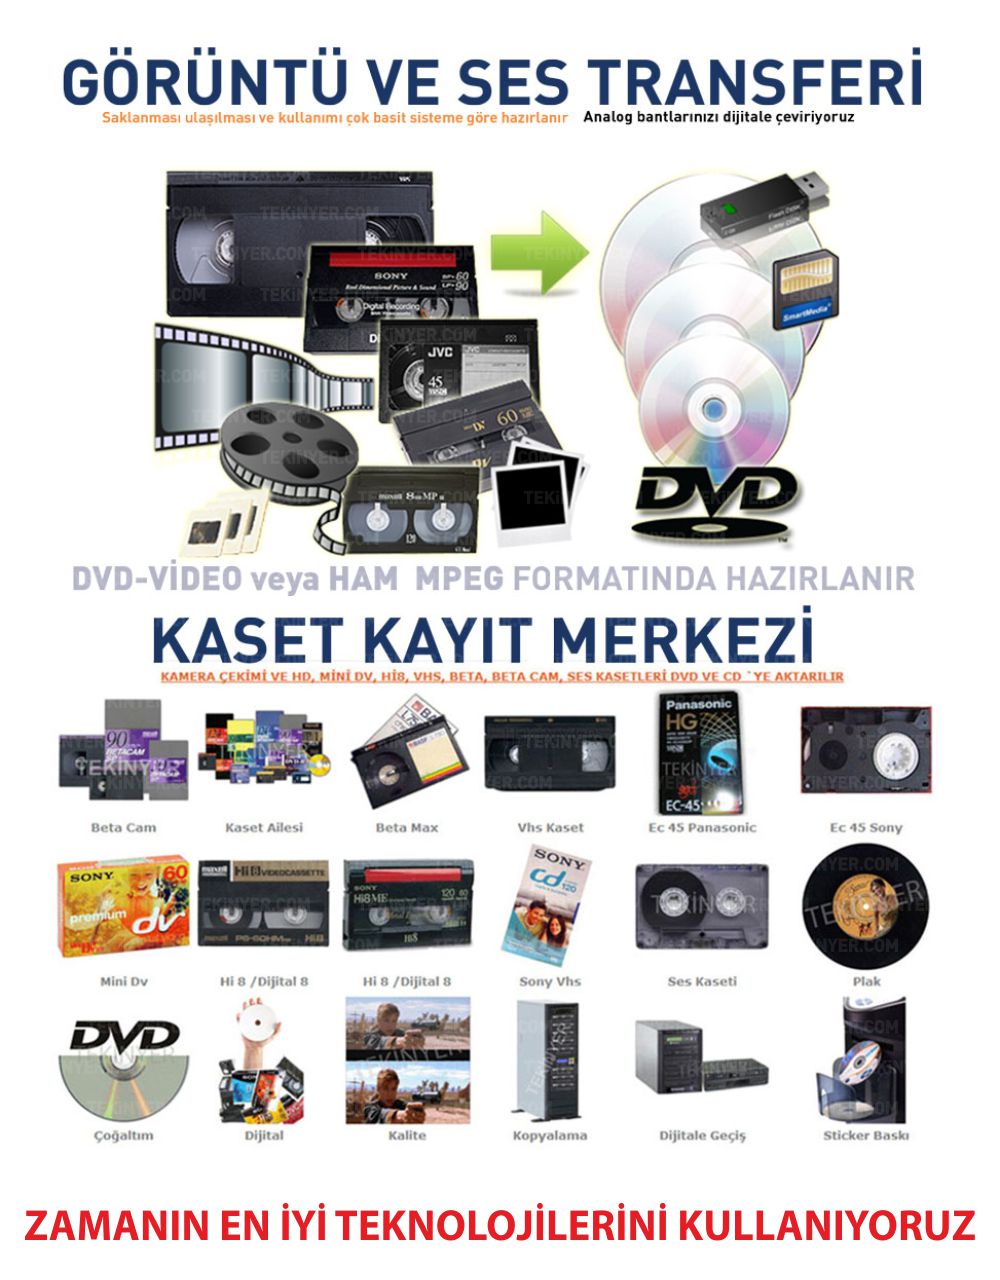 Kasetten CD ye Aktarma Kasetten Zamanın en iyi teknolijilerini kullanana Aktarım Kayıt Merkezi